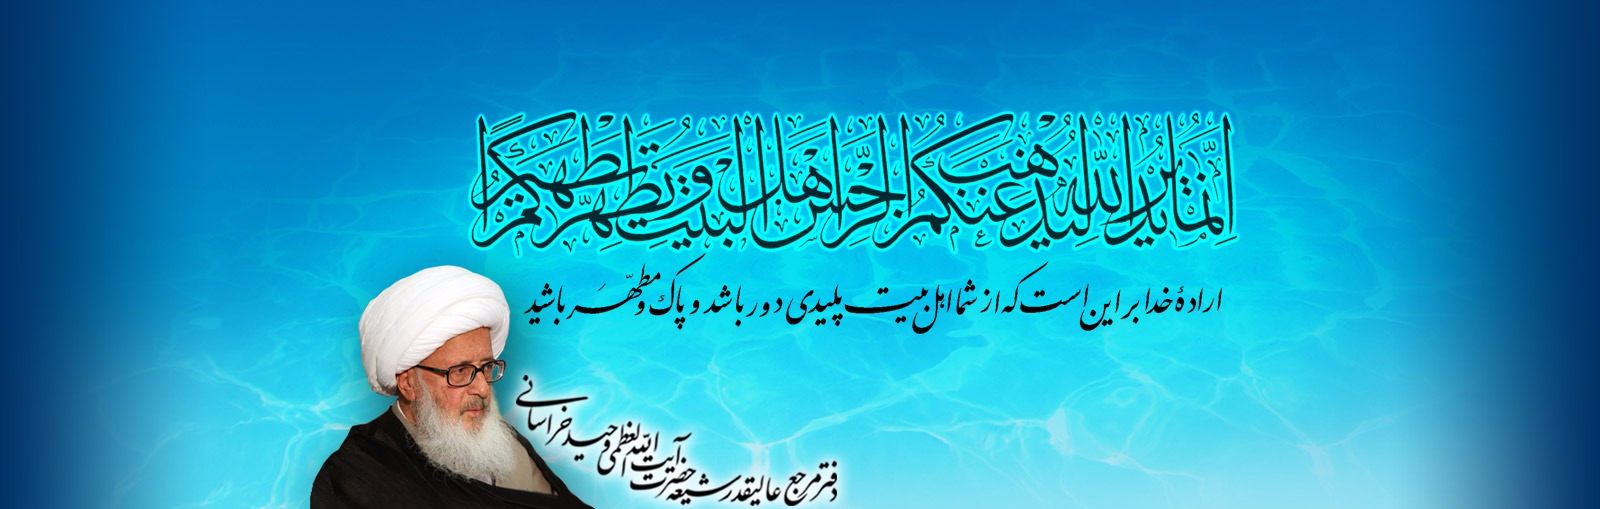 wahid khorasani ramezan banner sprited